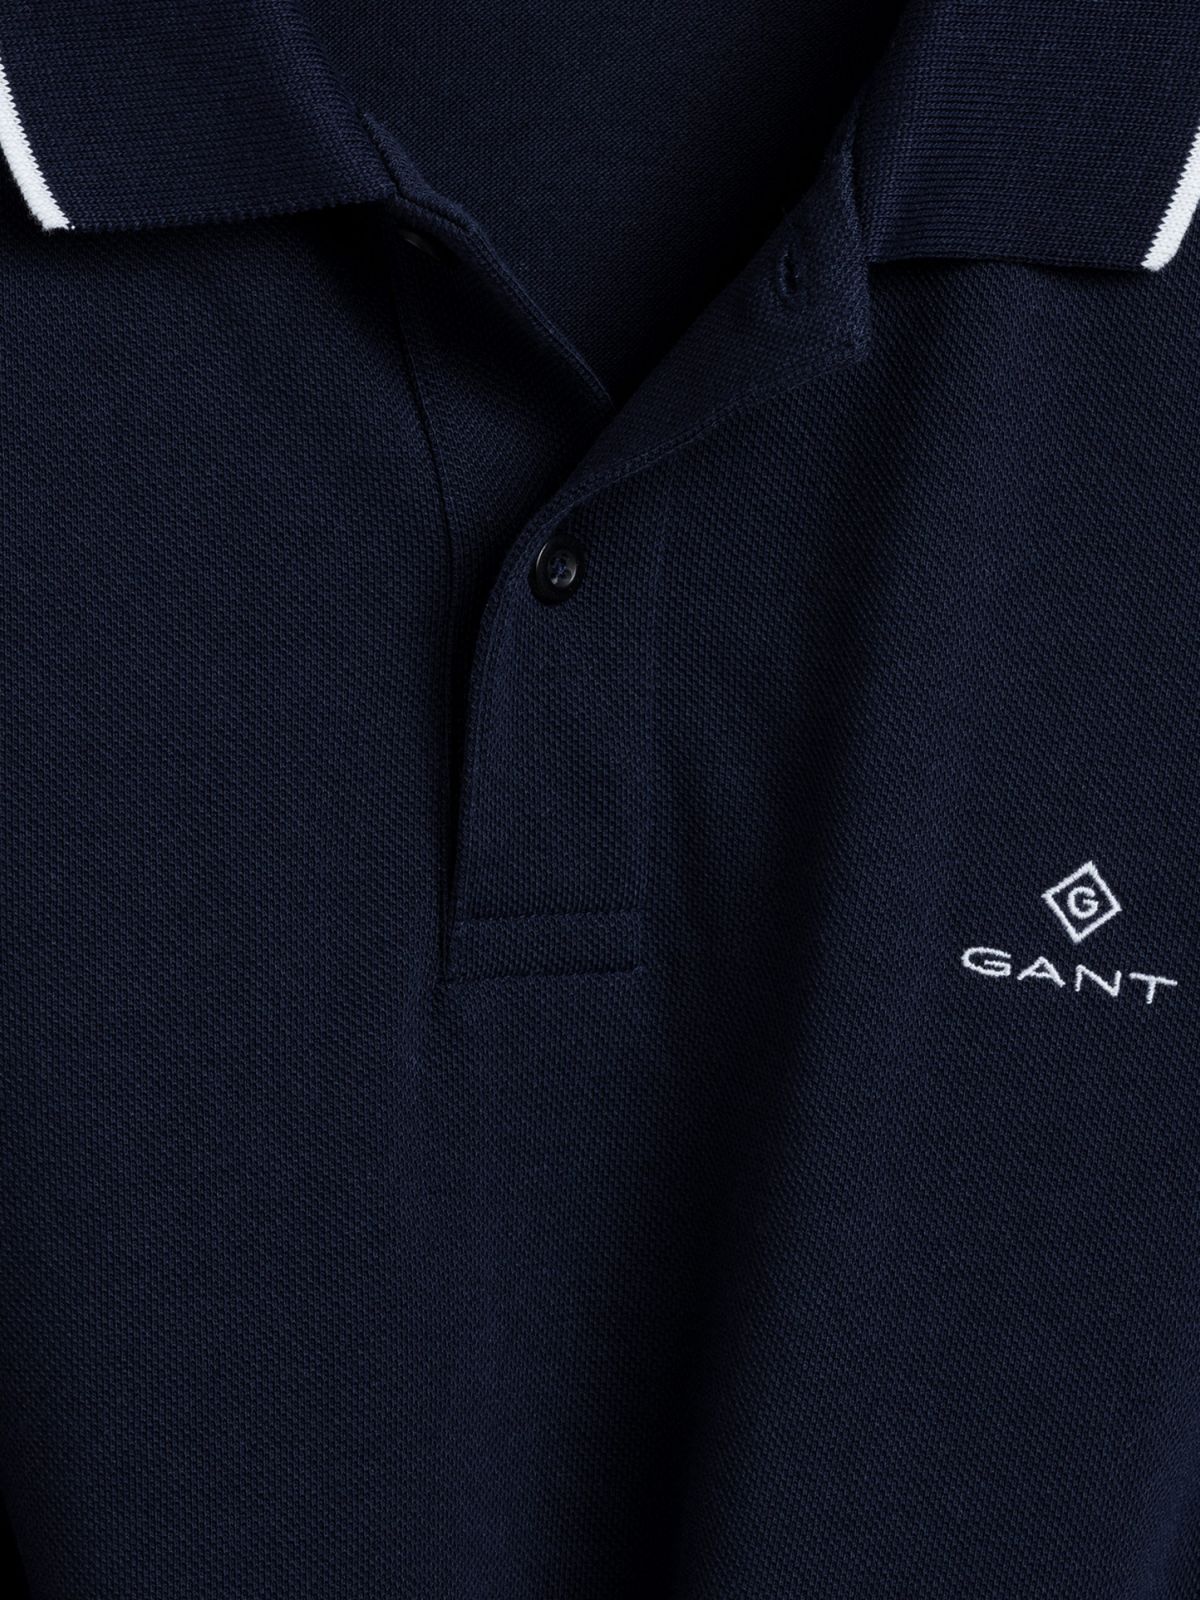  חולצת פולו לוגו עם שוליים מודגשים / גברים של GANT